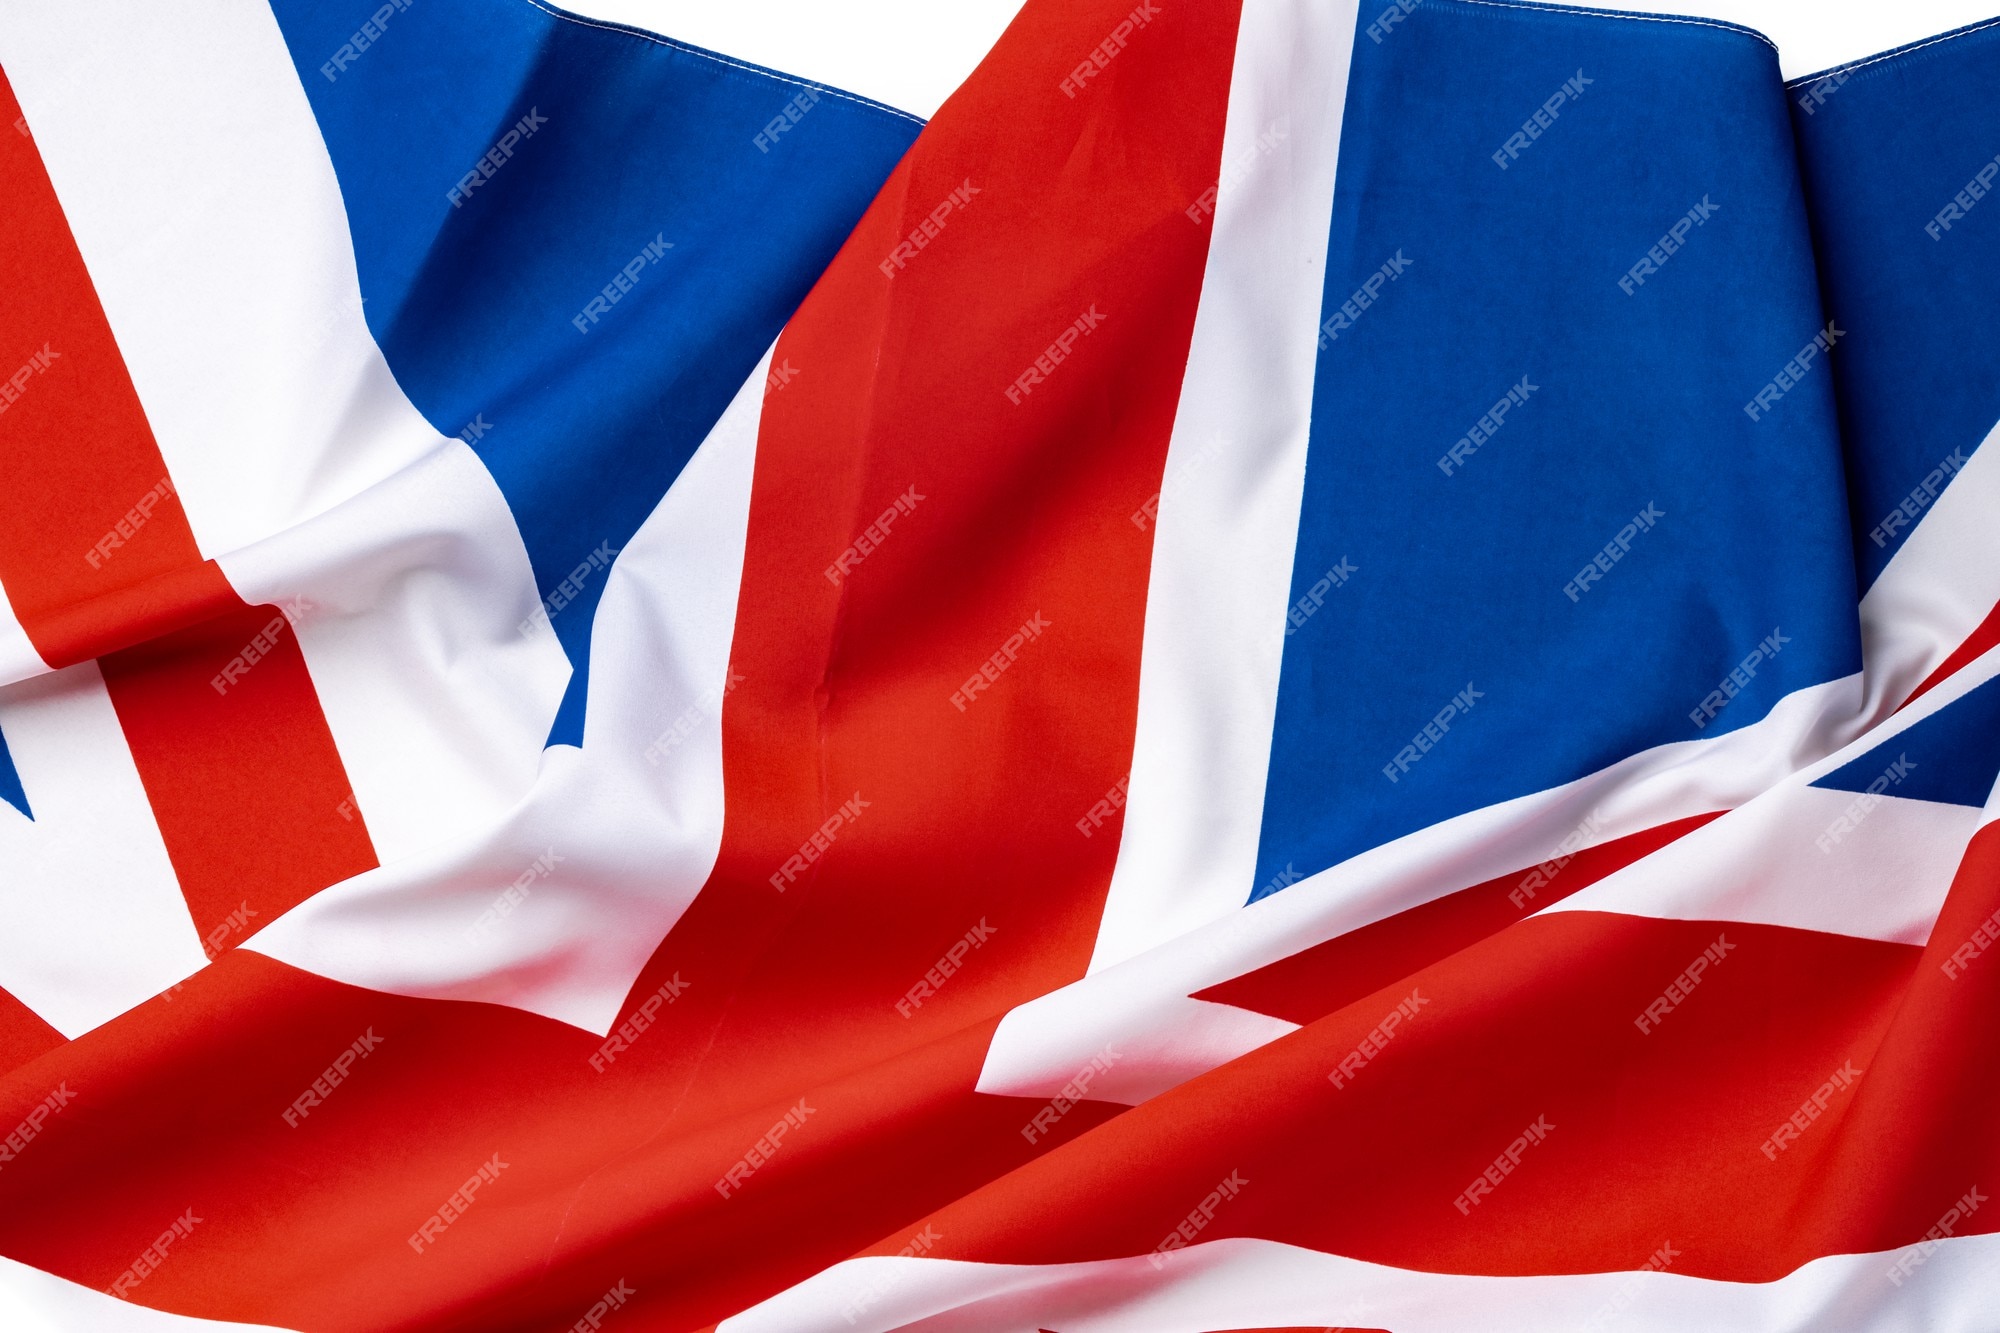 UK flag, thiết kế, nền đỏ:
Nền đỏ truyền tải sức mạnh, sự nghiêm túc và động lực cho Quốc kỳ Anh - một trong những cờ quốc gia đẹp nhất và được thiết kế tinh tế trên thế giới. Hãy khám phá hình ảnh của chúng tôi để thấy làm thế nào nền đỏ và các chi tiết màu trắng và xanh lá cây tạo nên một thiết kế cổ điển nhưng vẫn đầy cảm hứng.